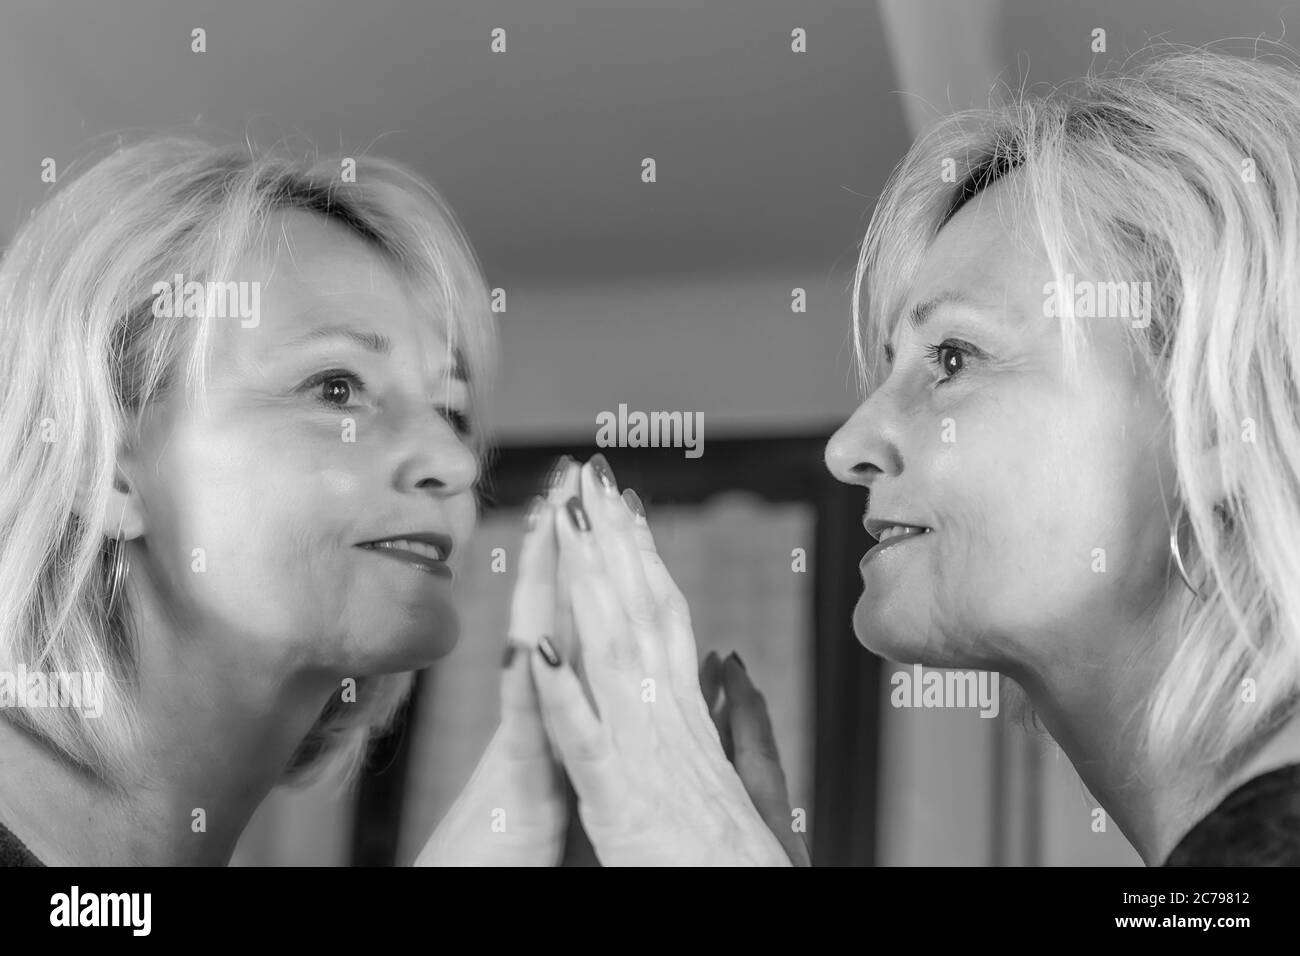 Eine blonde Frau mittleren Alters spiegelt sich in einem großen Spiegel wider, indem sie ihn mit ihren Händen mit einem glücklichen Ausdruck berührt Stockfoto